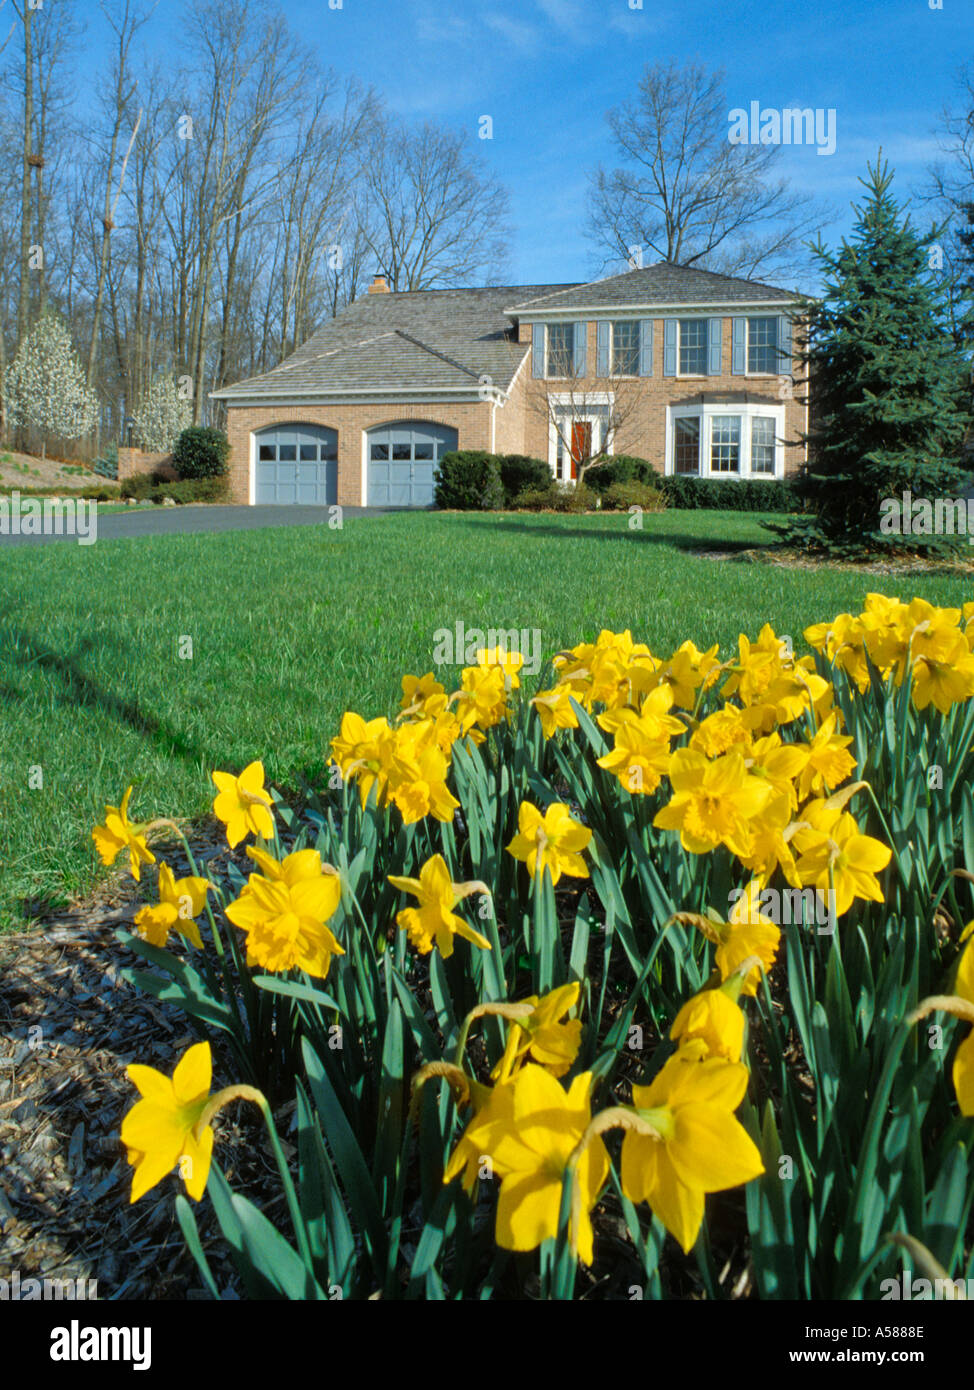 Narcisos amarillos en el primer plano de la parte frontal de la casa de ladrillo marrón con garaje para dos coches y una larga entrada liberada de propiedad Foto de stock